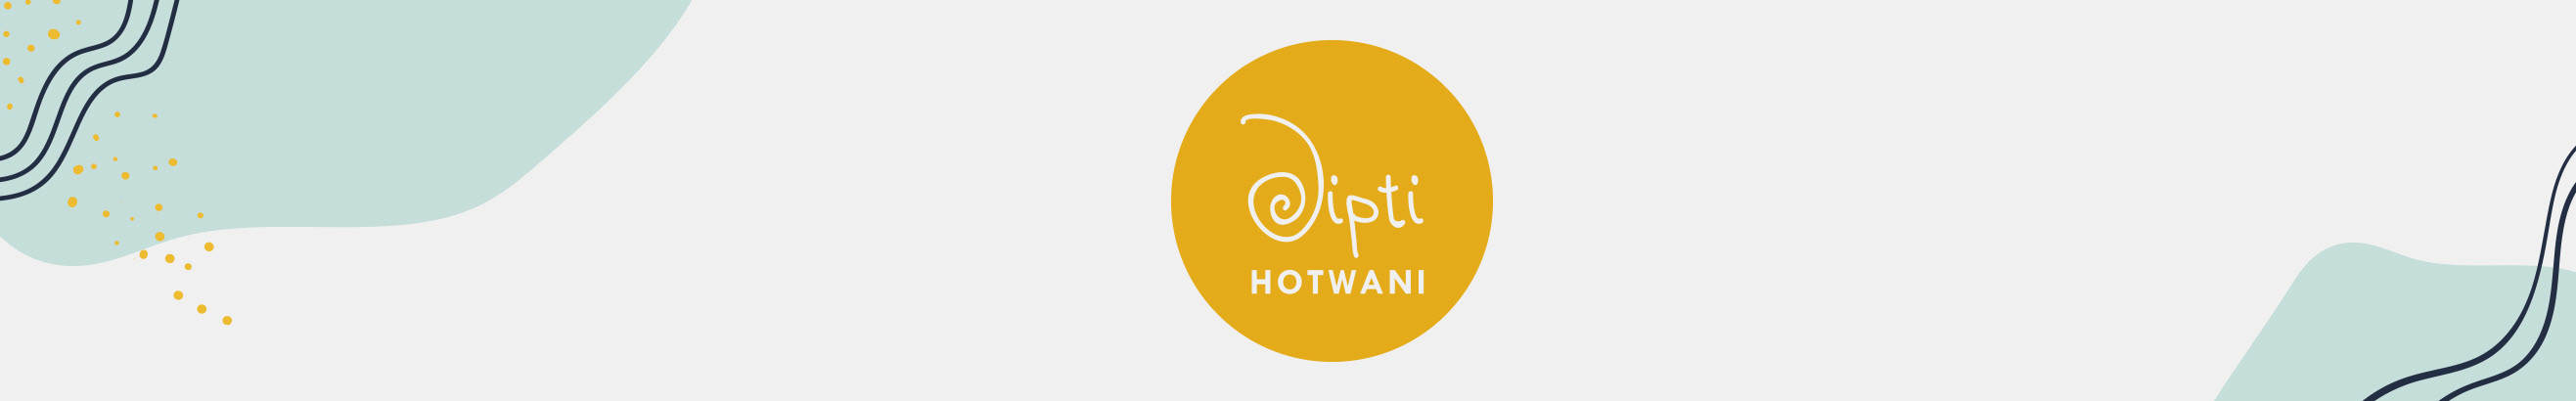 Dipti Hotwanis profilbanner